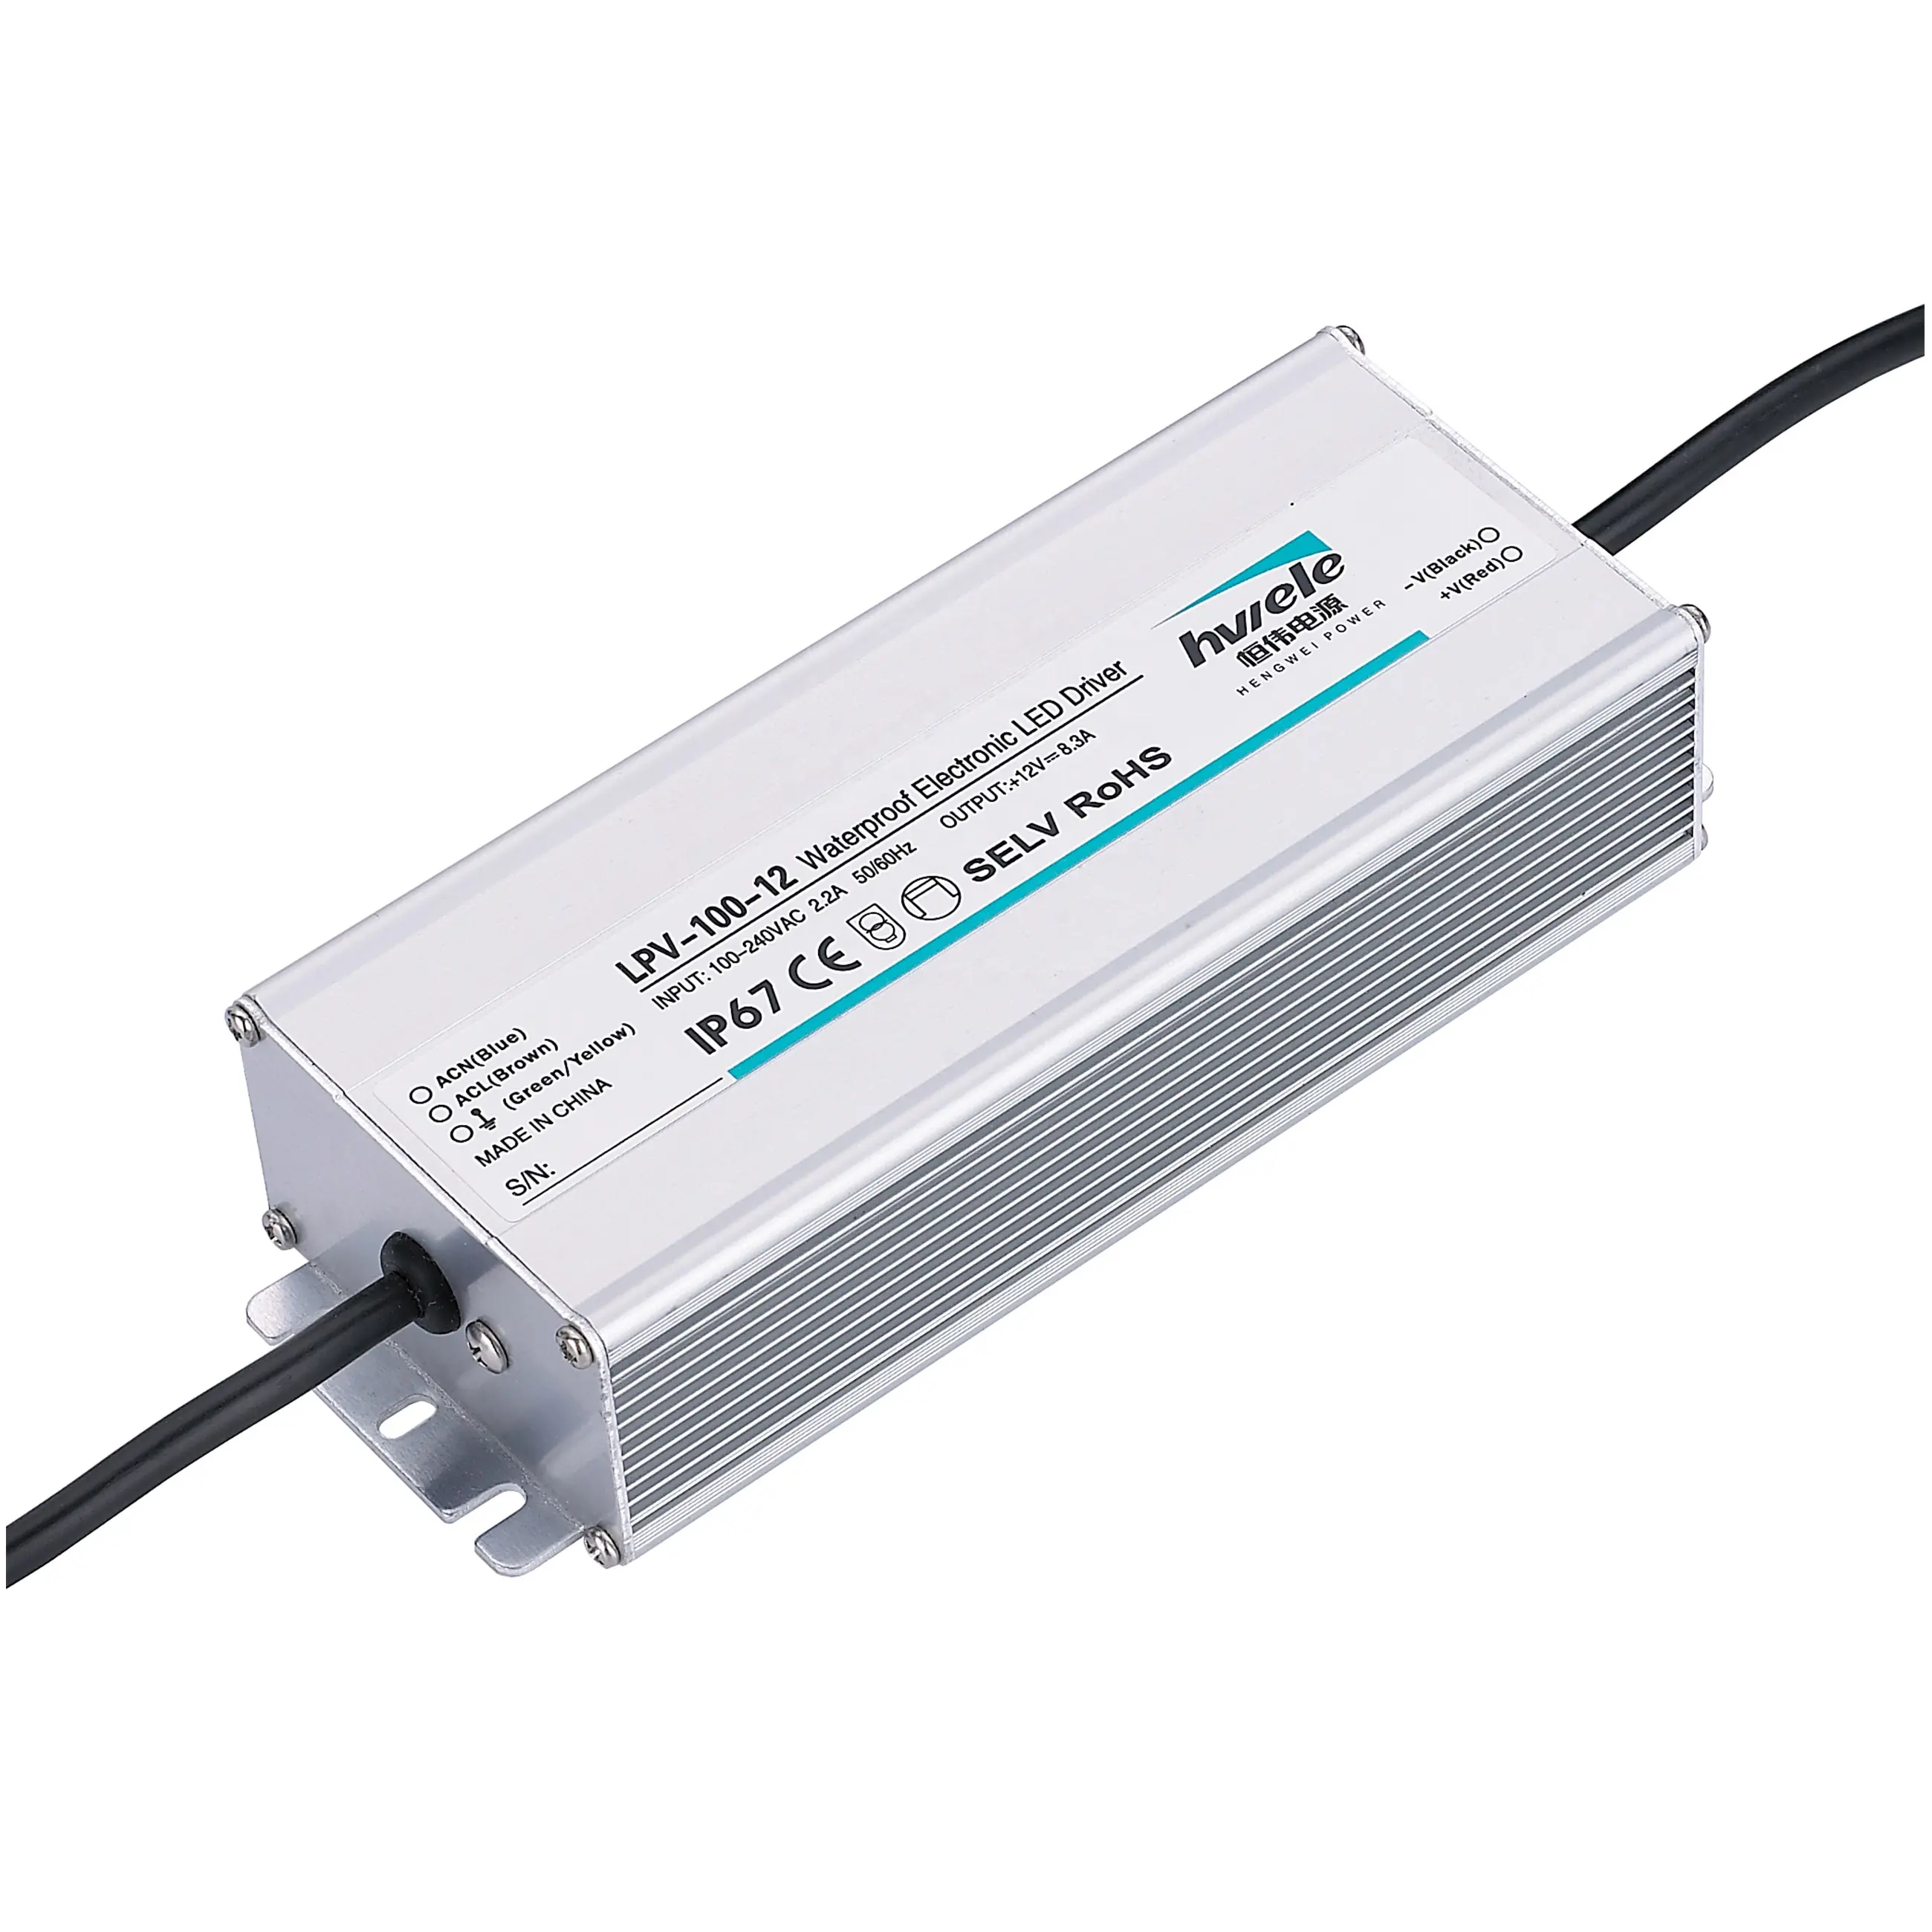 CE ROHS SAA aprobó impermeable IP67 CV tipo LPV-100-12 100W 12V 8.5A fuente de alimentación LED para iluminación LED